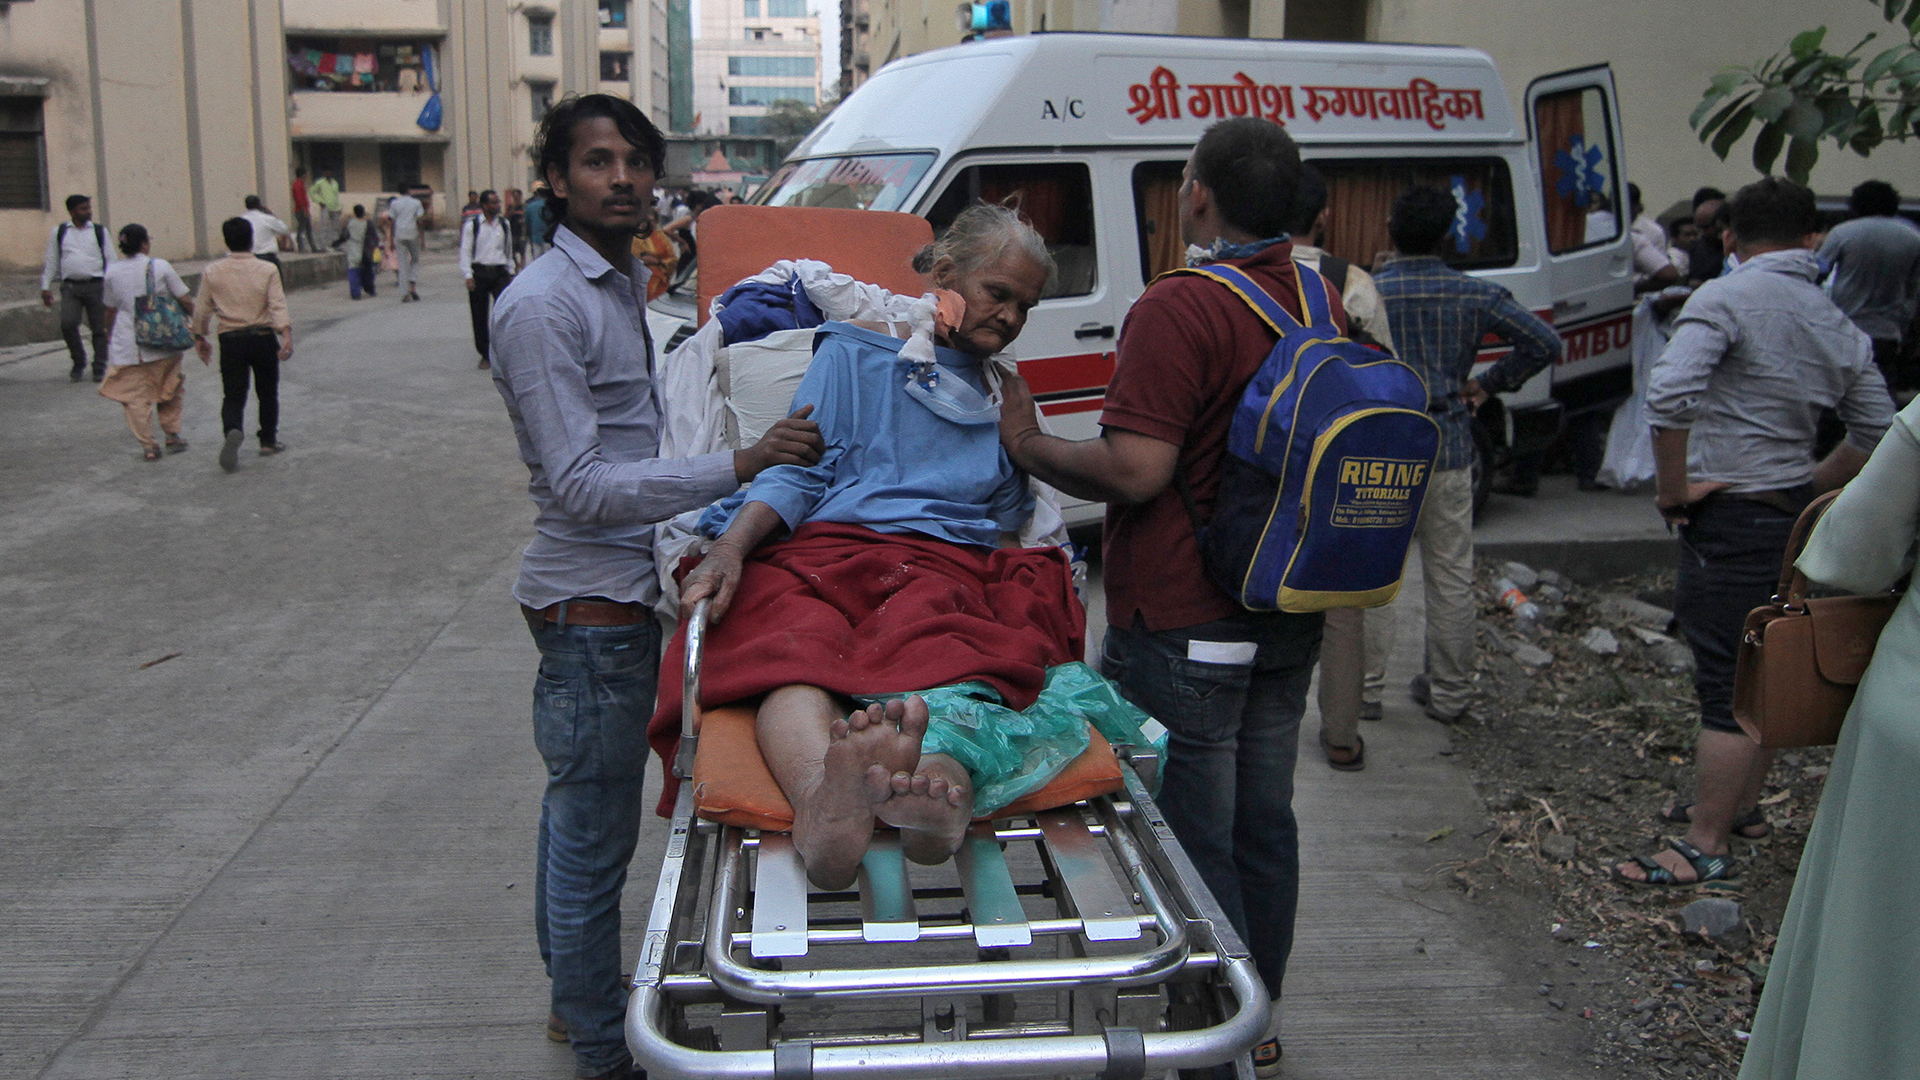 Eine ältere Dame auf einer Krankenliege mit zwei Helfern | Bildquelle: REUTERS